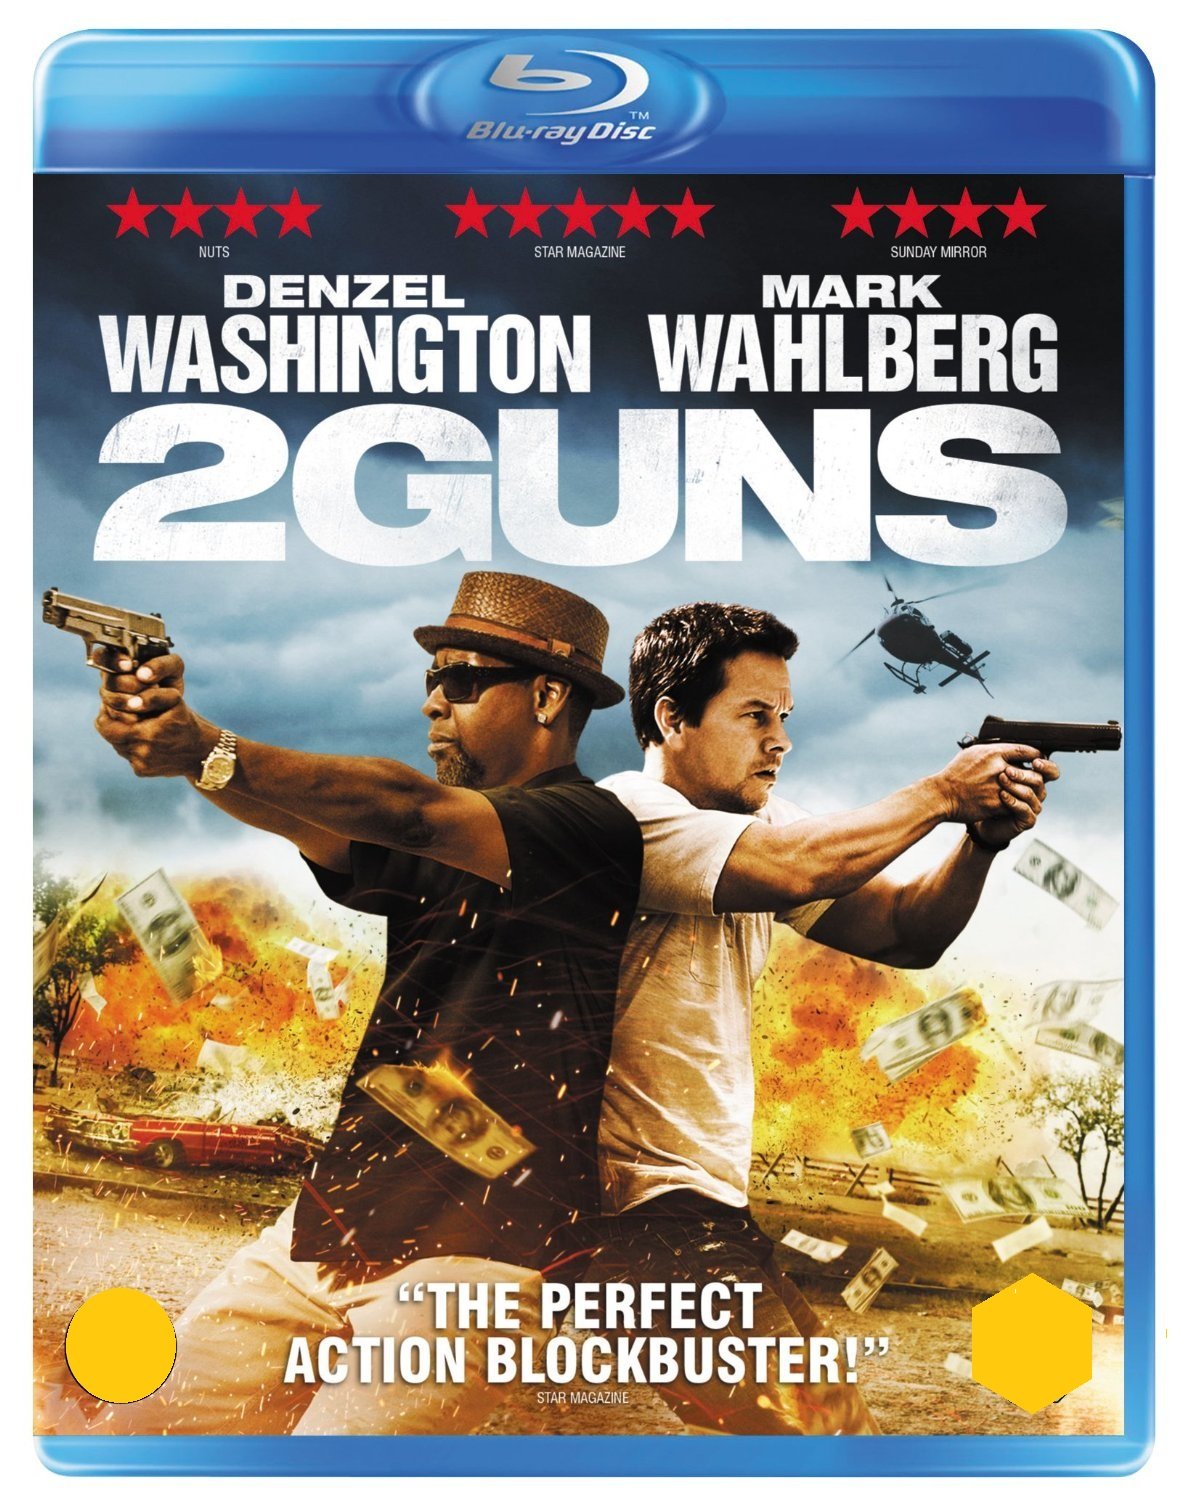 2-guns-movie-purchase-or-watch-online